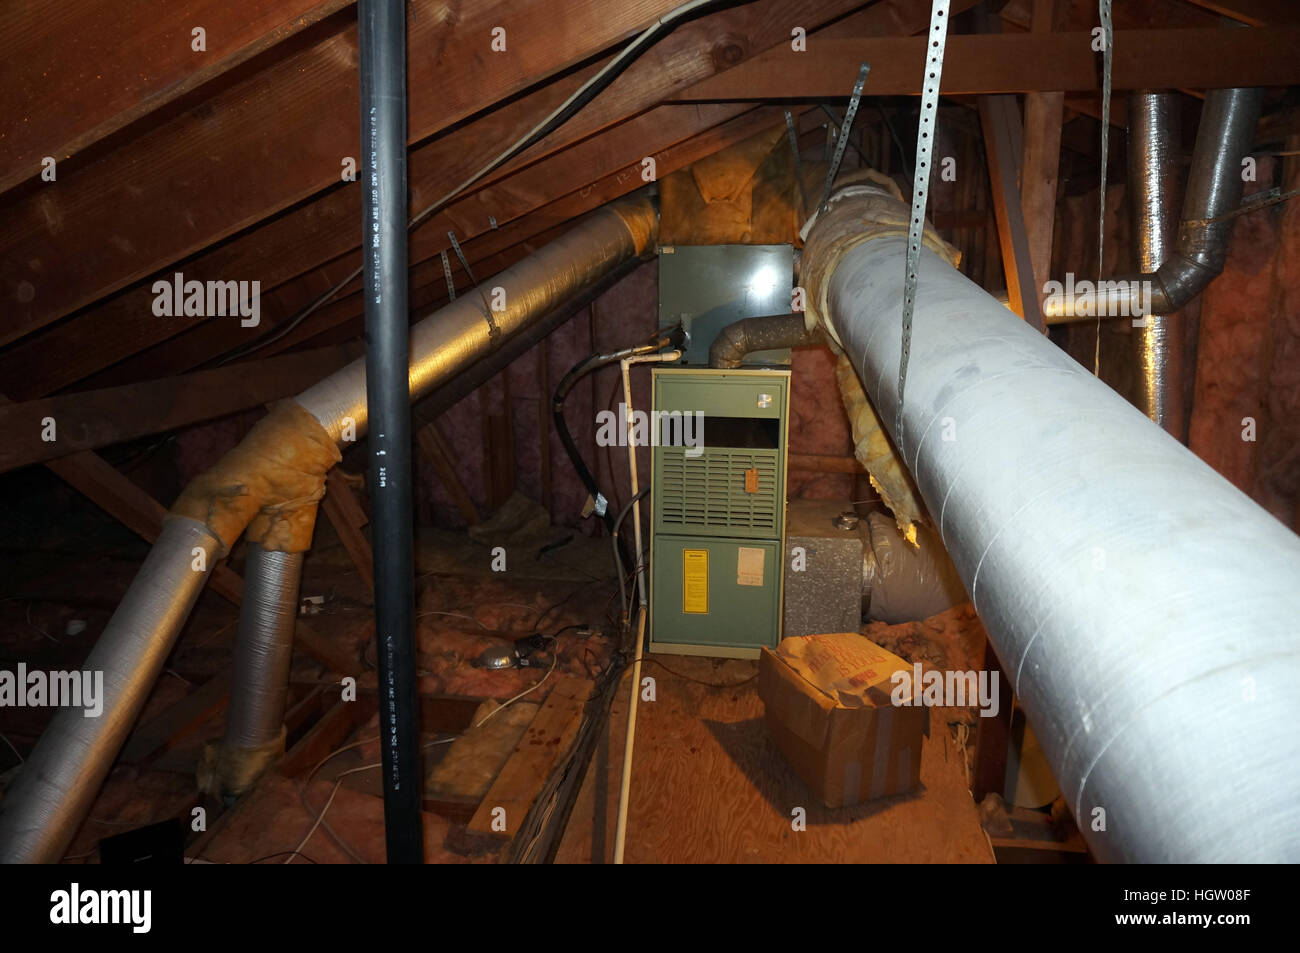 Heizung und Klimaanlage Kanalisierung auf einem Dachboden Stockfotografie -  Alamy